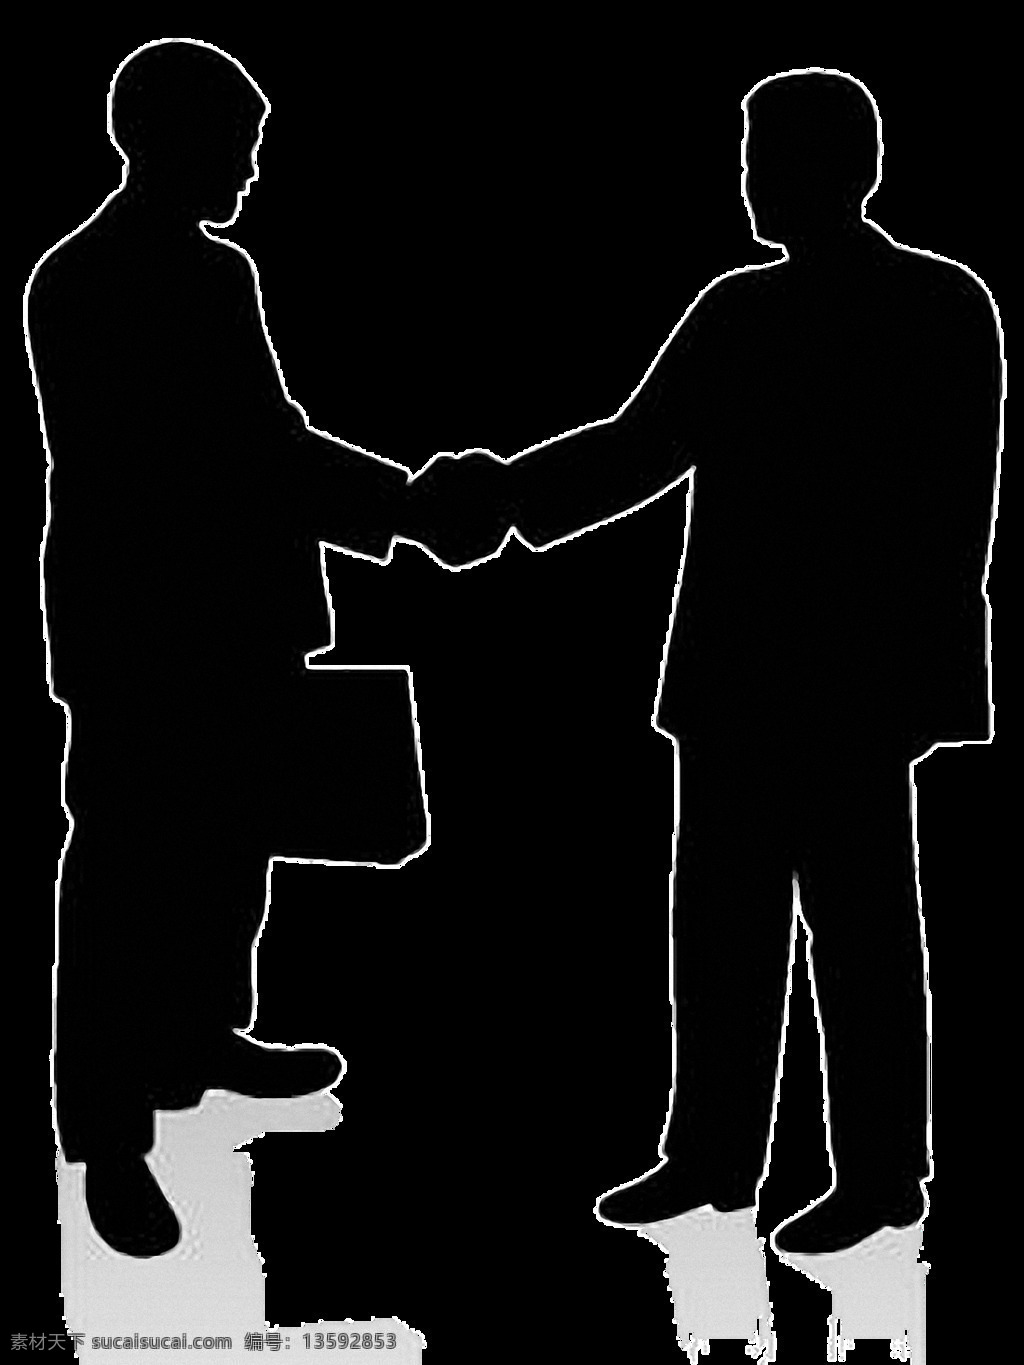 商务 男士 握手 图 免 抠 透明 会谈人物剪影 谈判剪影 接见图片 接见剪影图片 商业谈判 商务会谈 采访人物 谈判人物 会谈场景 接见场景